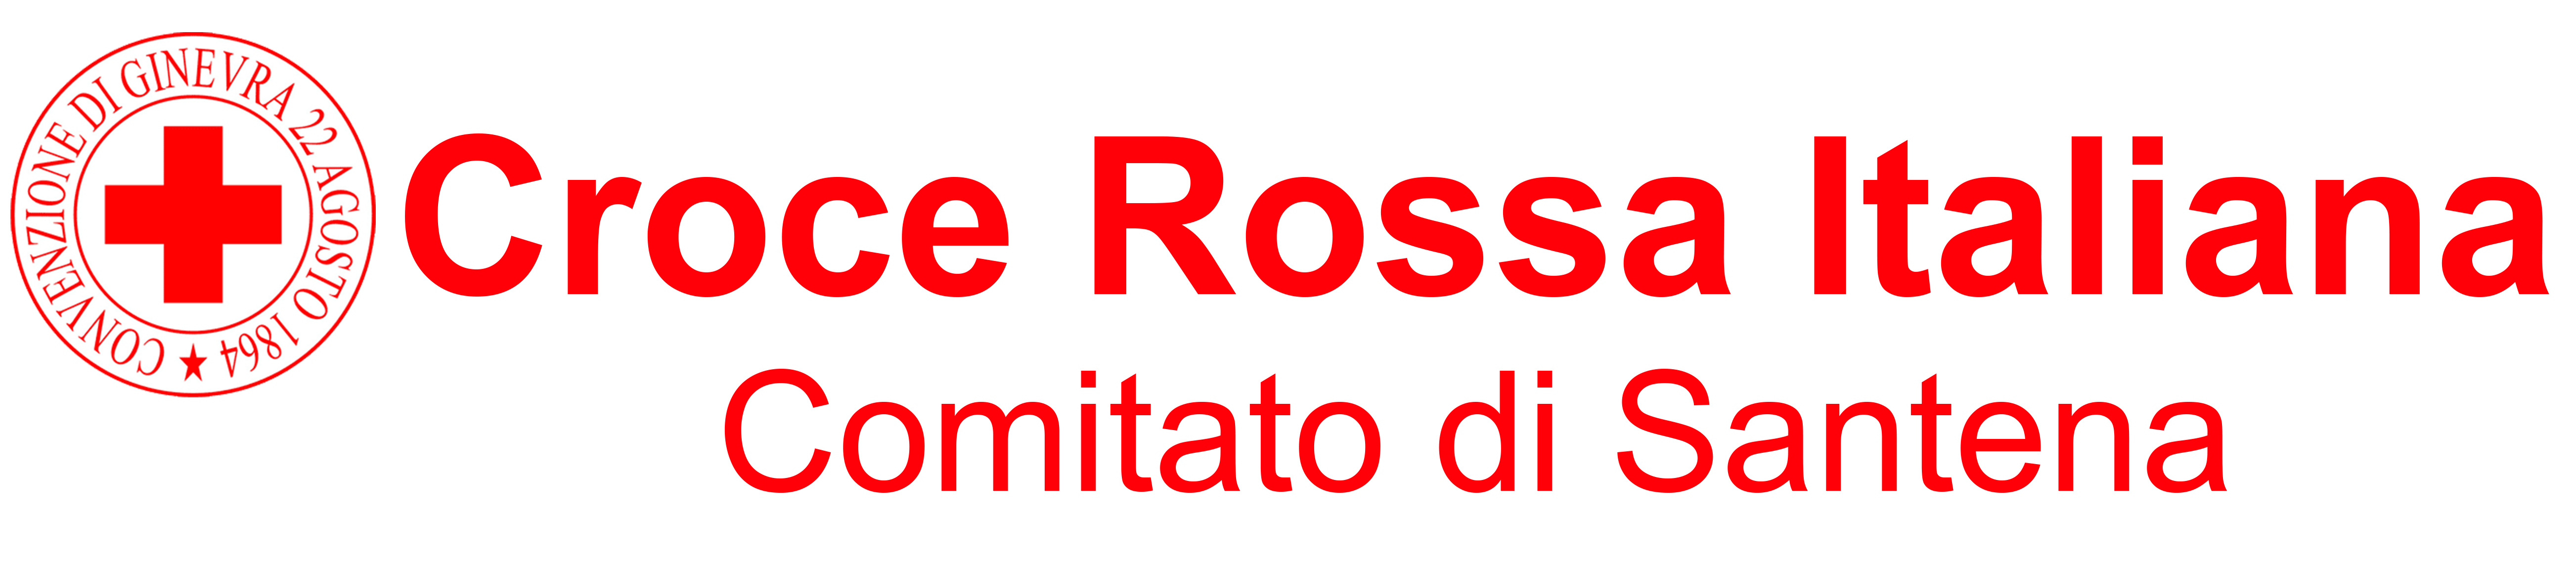 Croce Rossa Italiana - Comitato di Santena (TO)